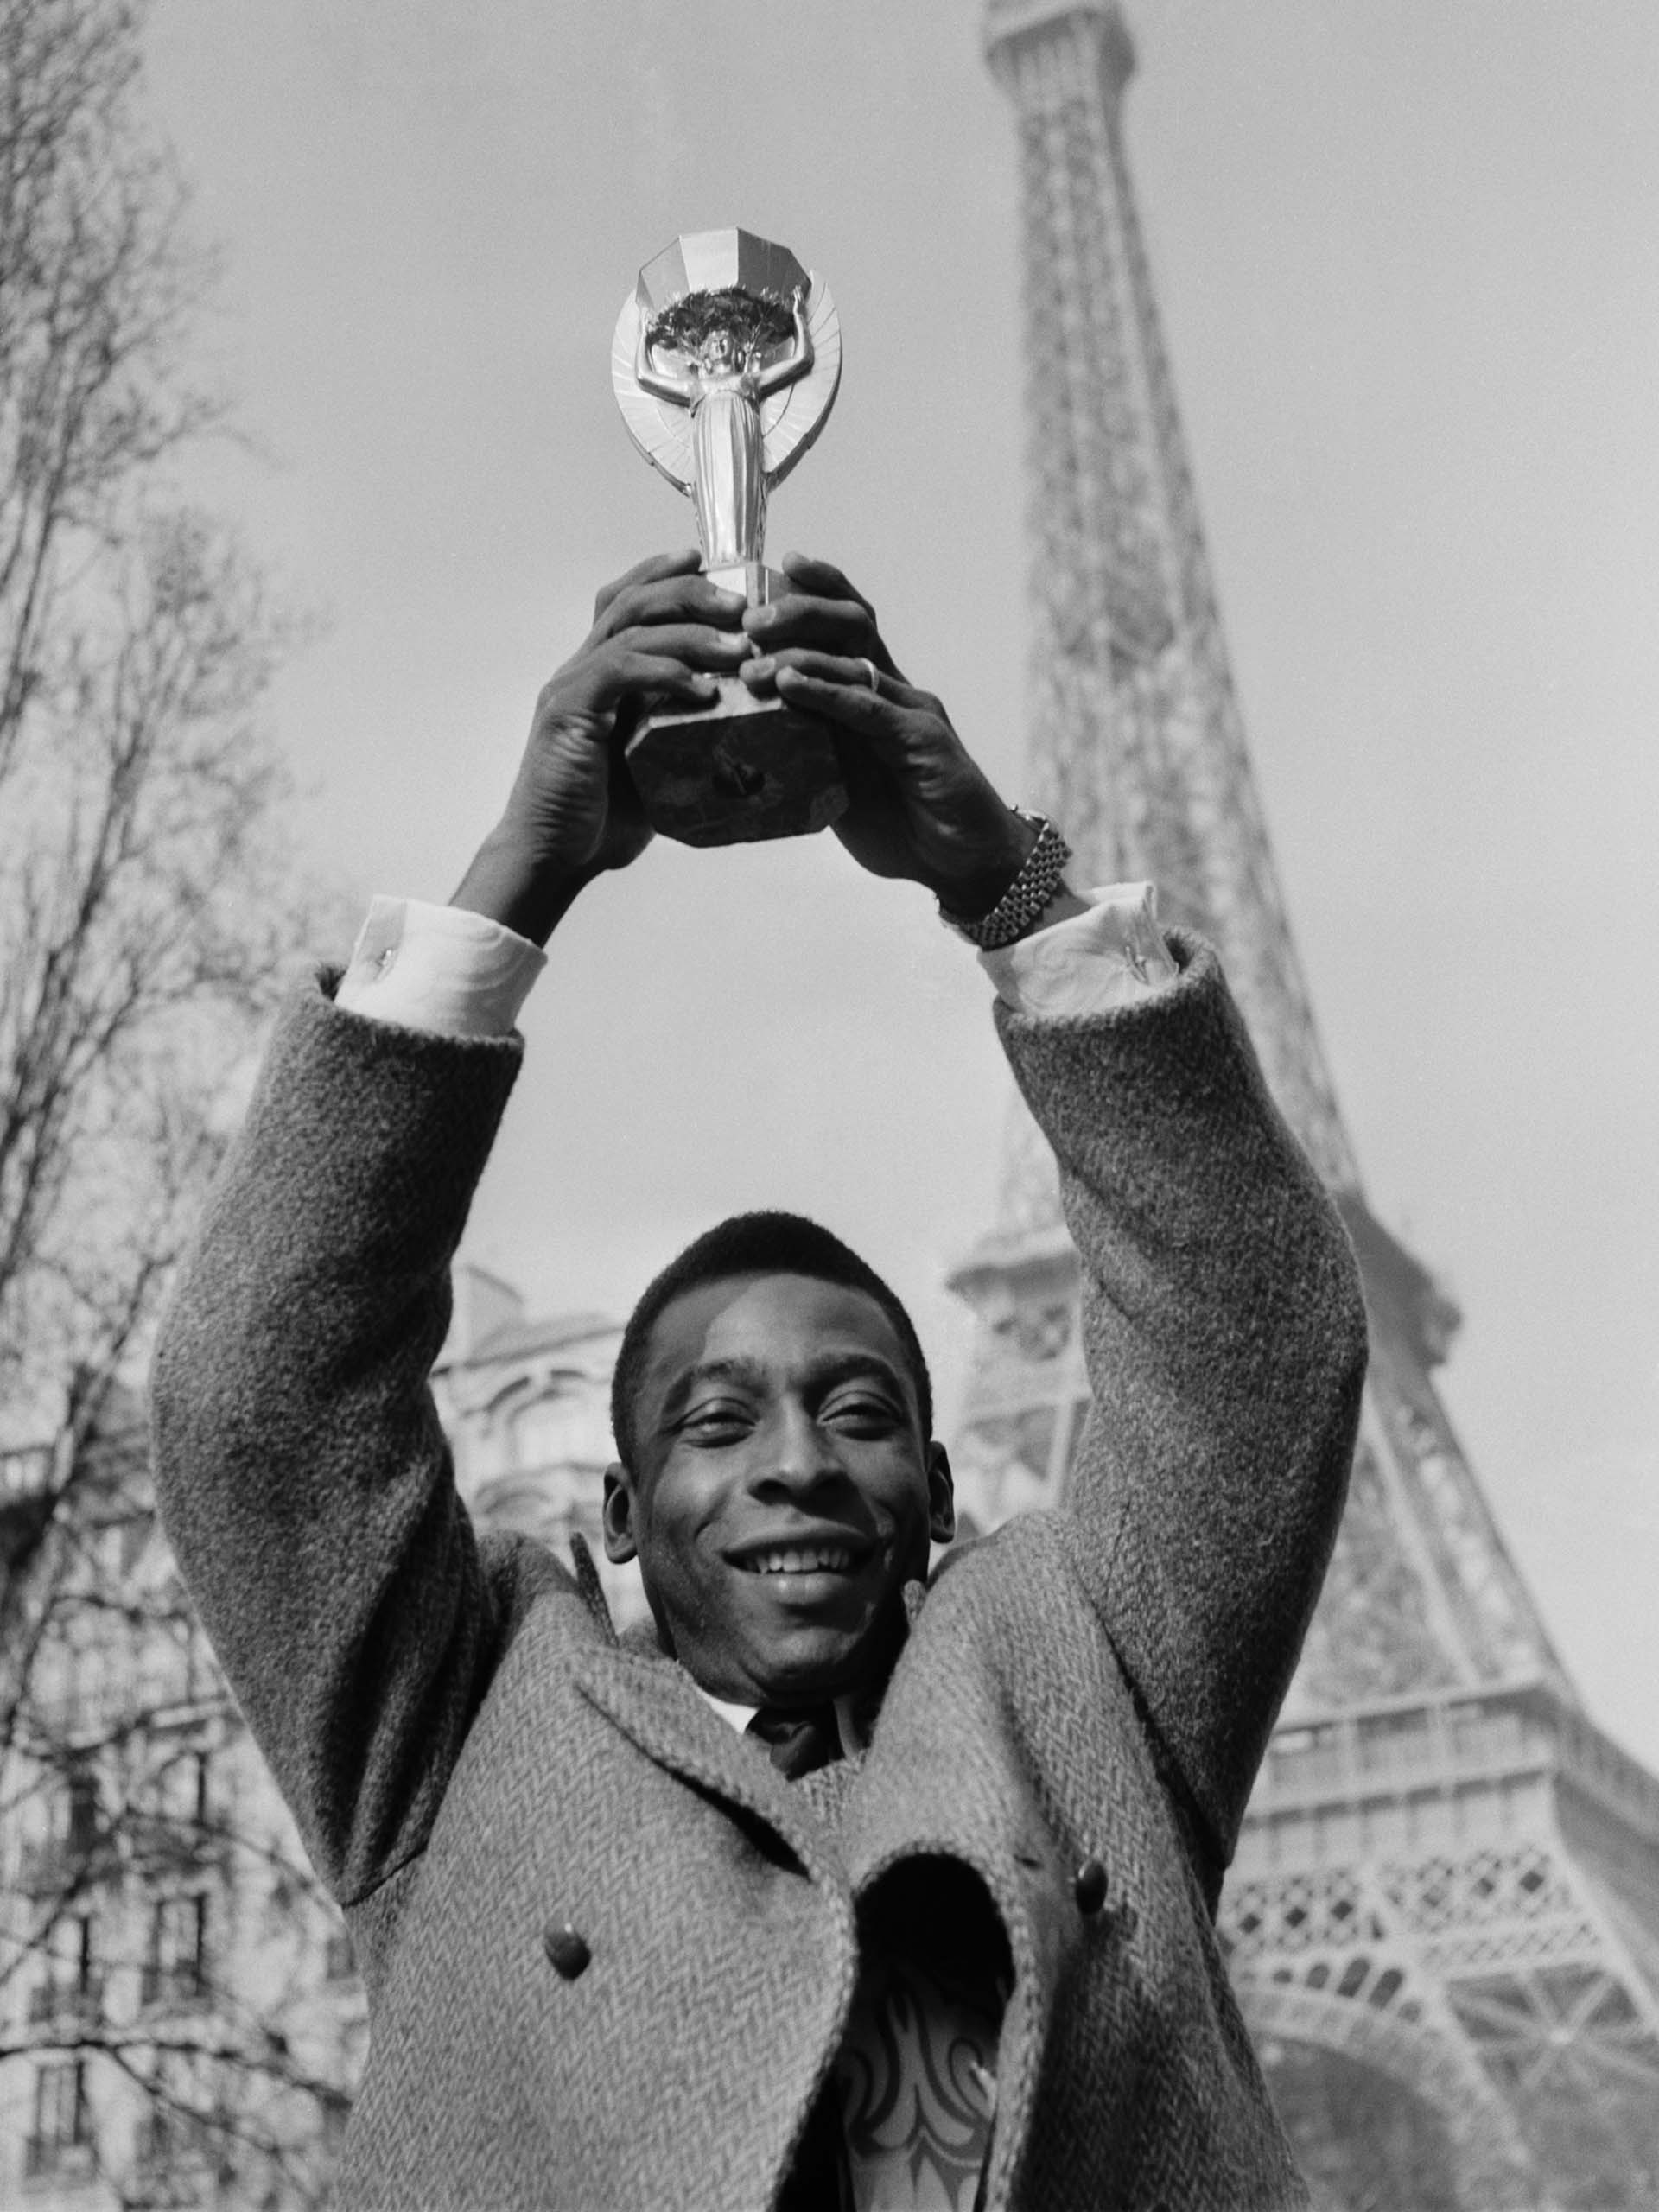 Aquí con la copa Jules Rimet, el trofeo que se entregaba al campeón del Mundial FIFA, durante 1970